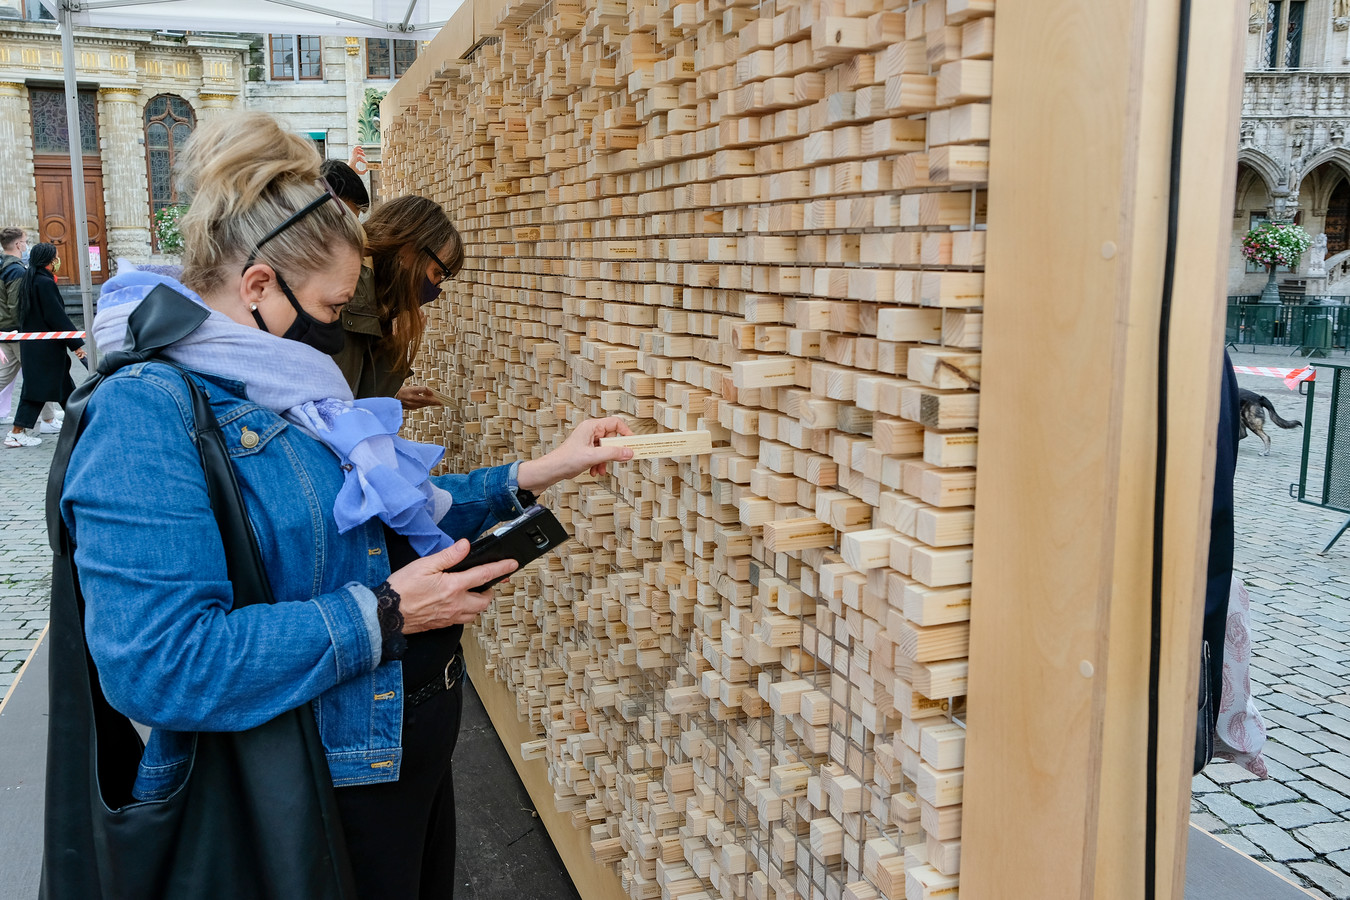 De interactieve kunstinstallatie bestaat uit een muur van honderden houten blokjes.